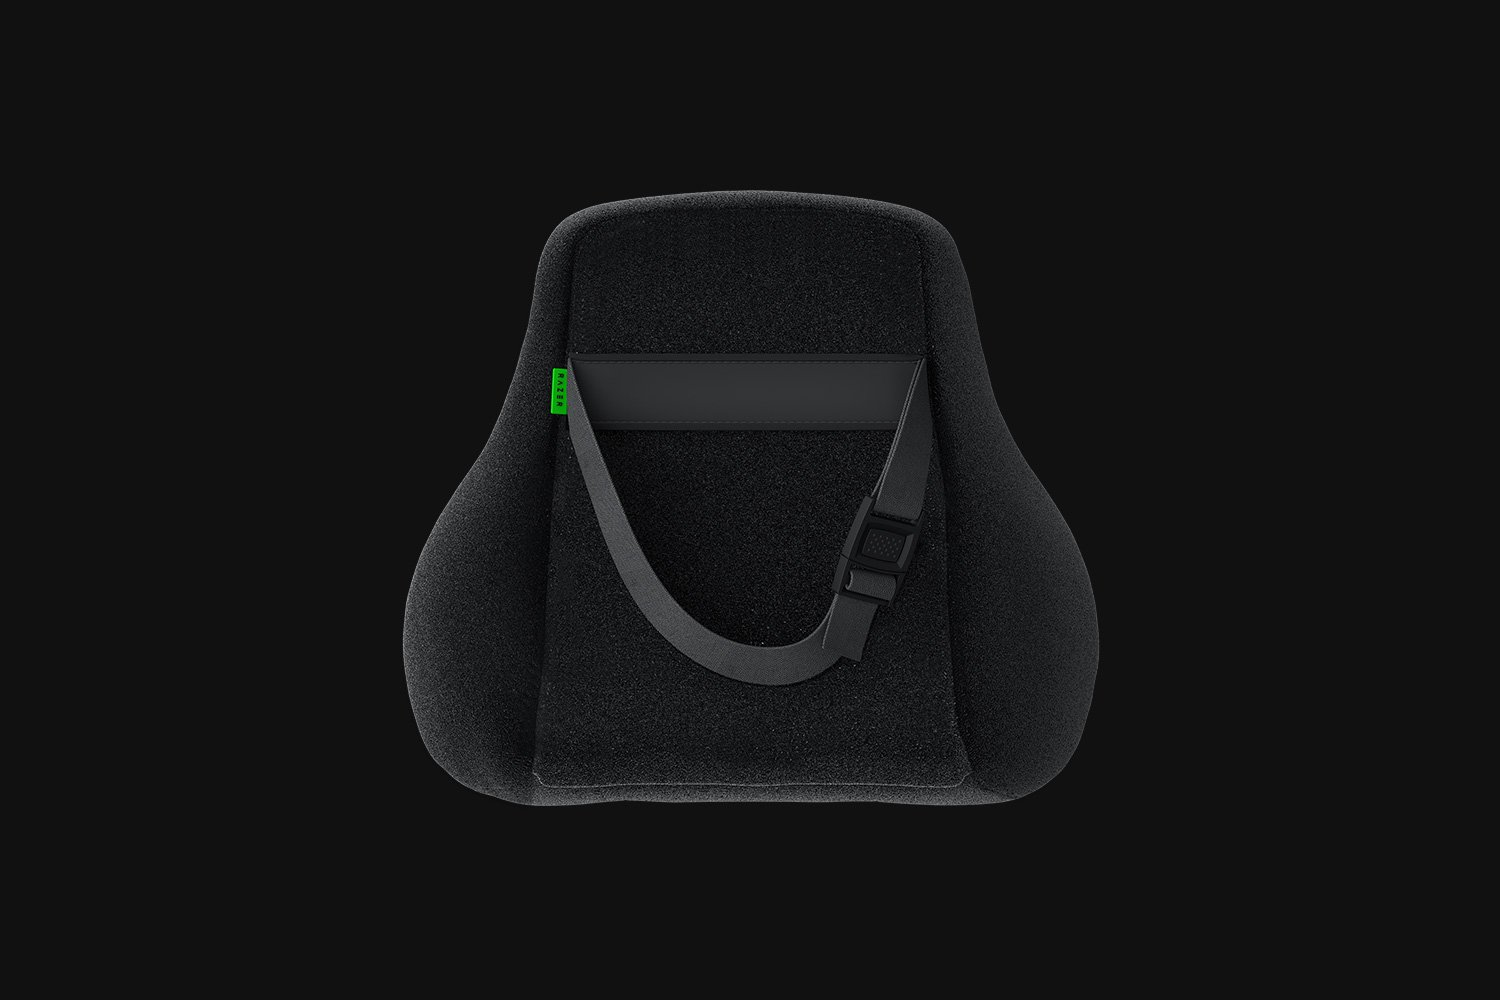 Nacken- & Kopfkissen für Gaming-Stühle – Razer Head Cushion